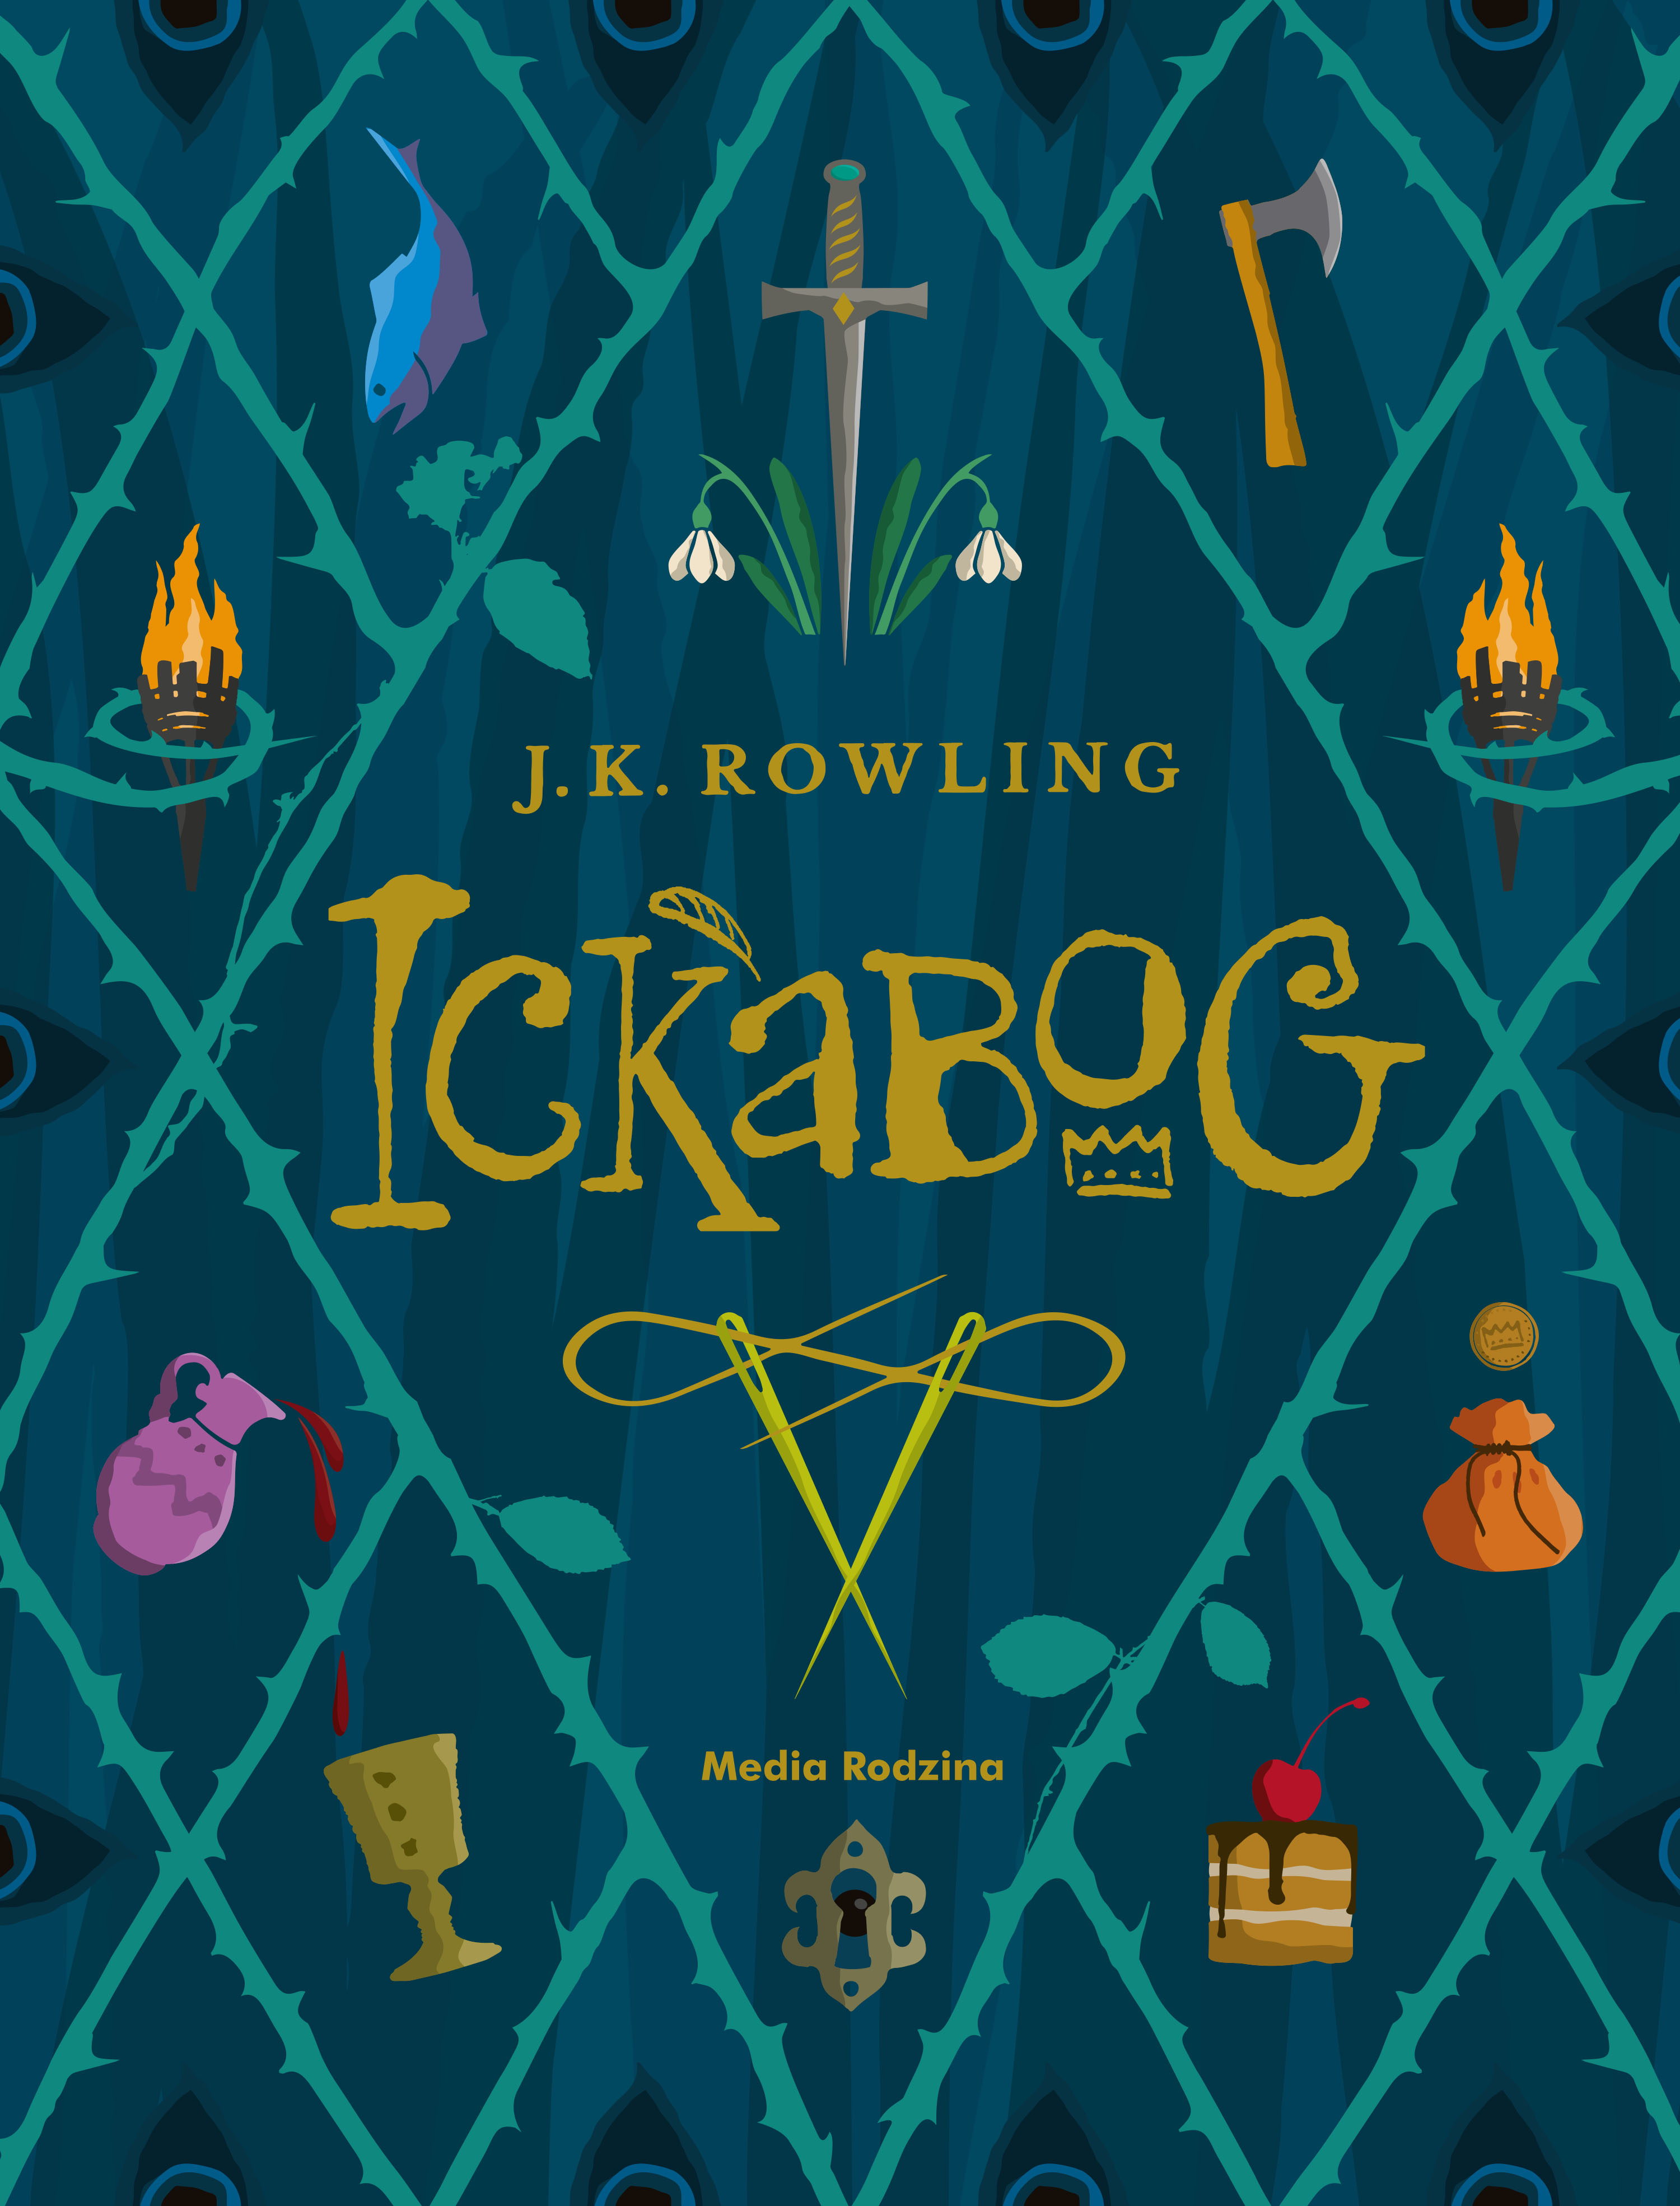 "Ickabog" - książka JK. Rowling czeka na Twoją ilustrację!